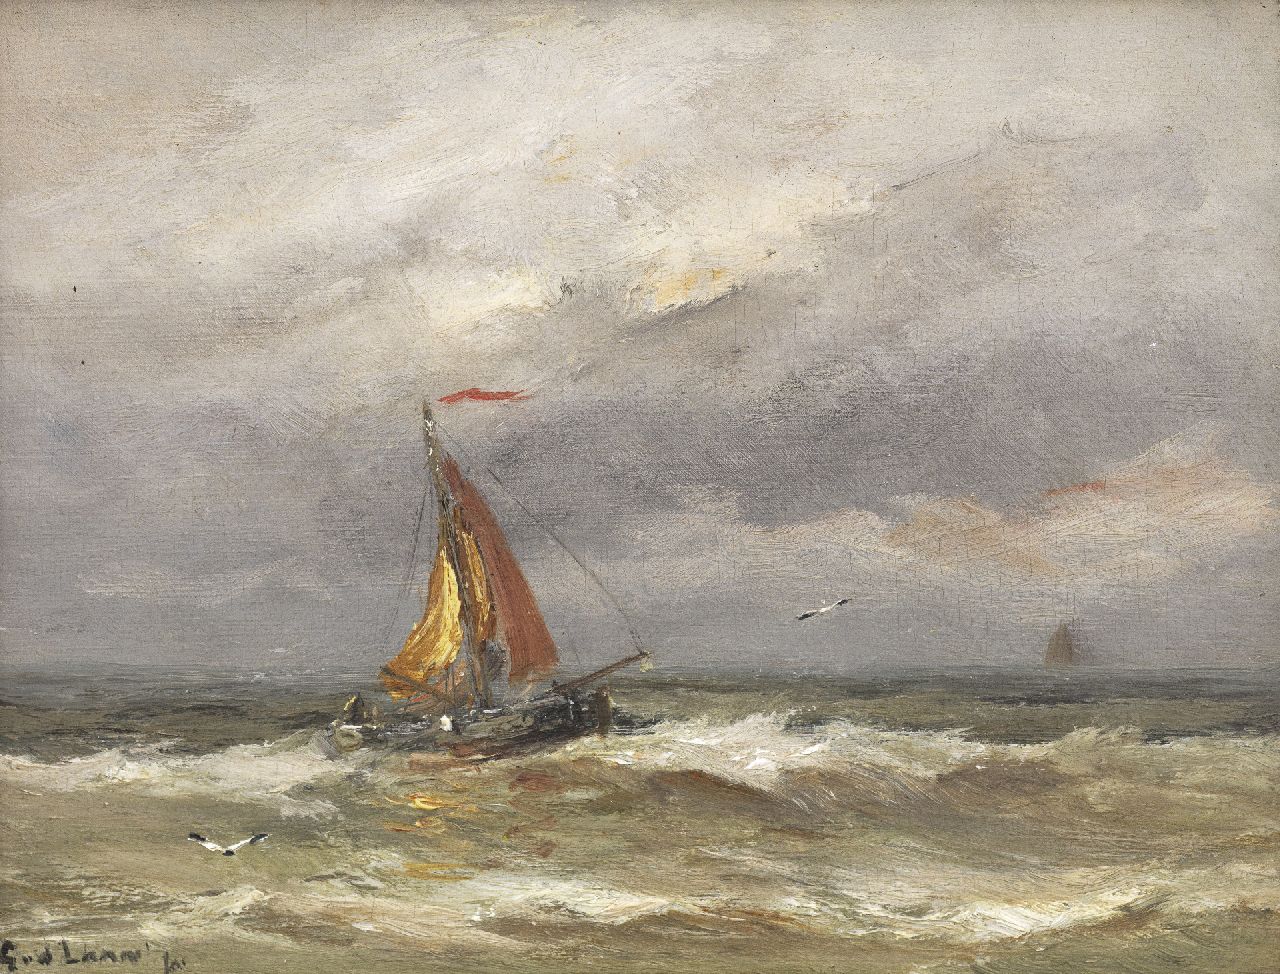 Laan G. van der | Gerard van der Laan, Fishing ship on the sea by Katwijk, oil on panel 15.0 x 19.8 cm, signed l.l.